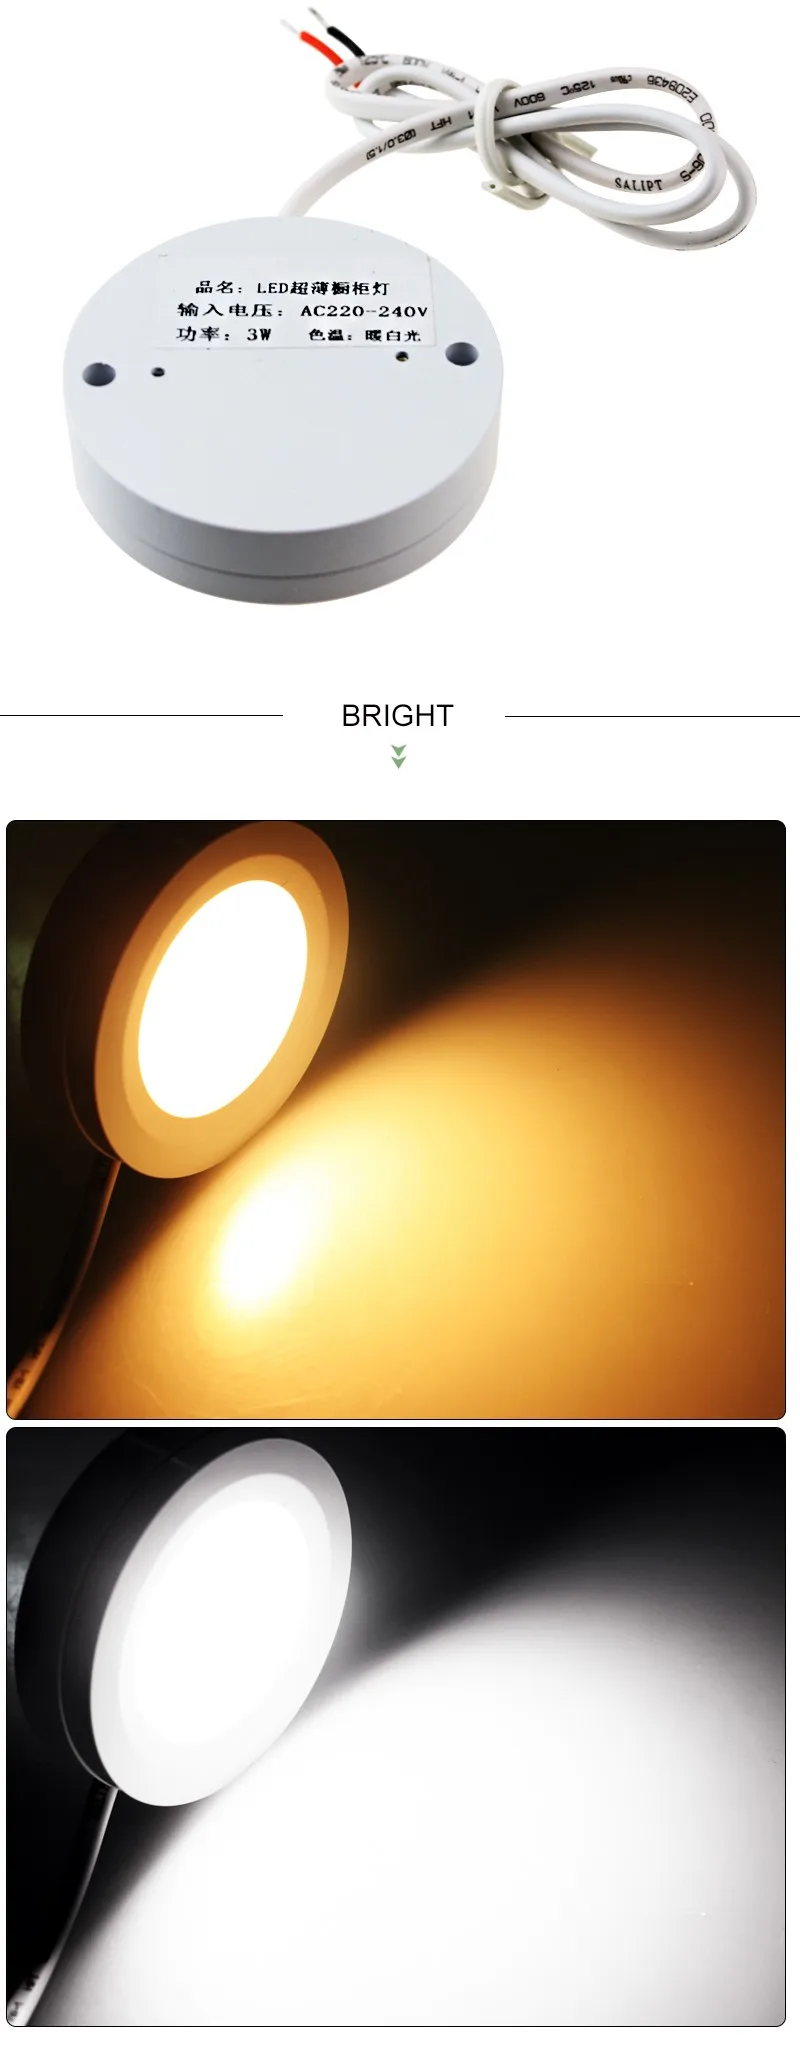 Светодиодный светильник Точечный светильник 3 Вт 220 в 240 В потолочный светильник настенный кухонный шкаф белый COB светодиодный светильник